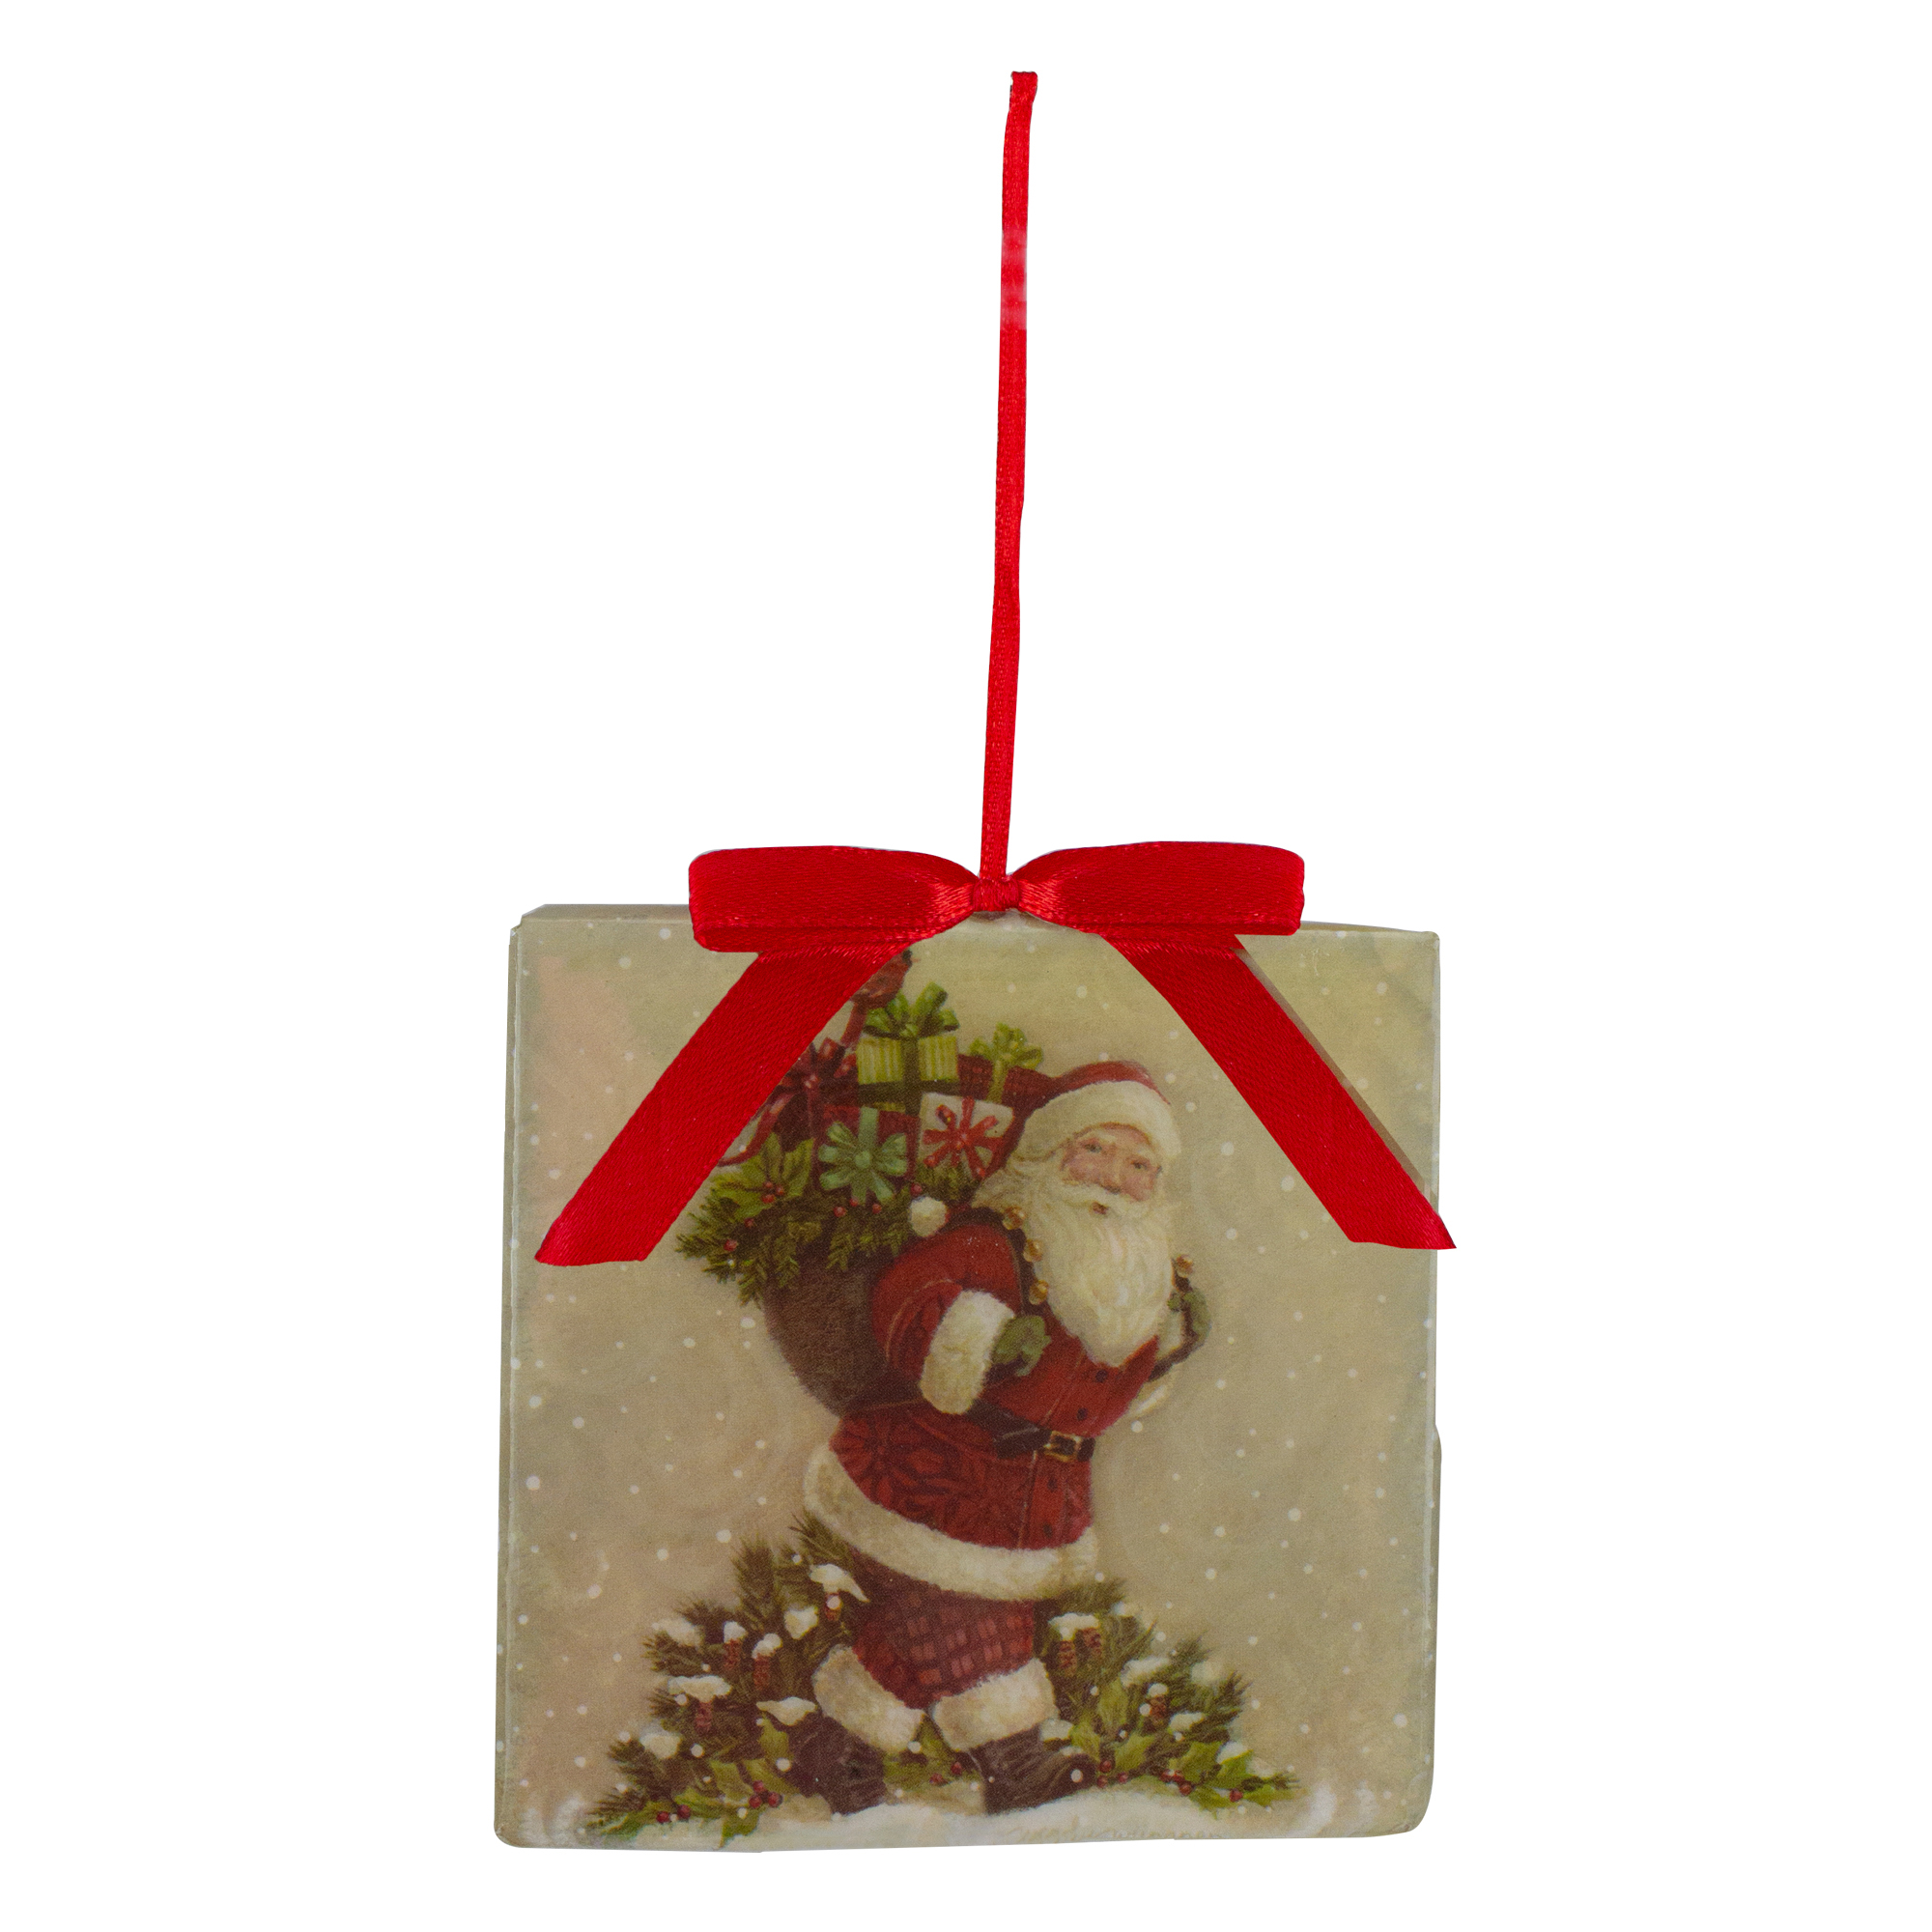 Kurt S. Adler 3.5" Square Vintage Inspired Santa Christmas Ornament